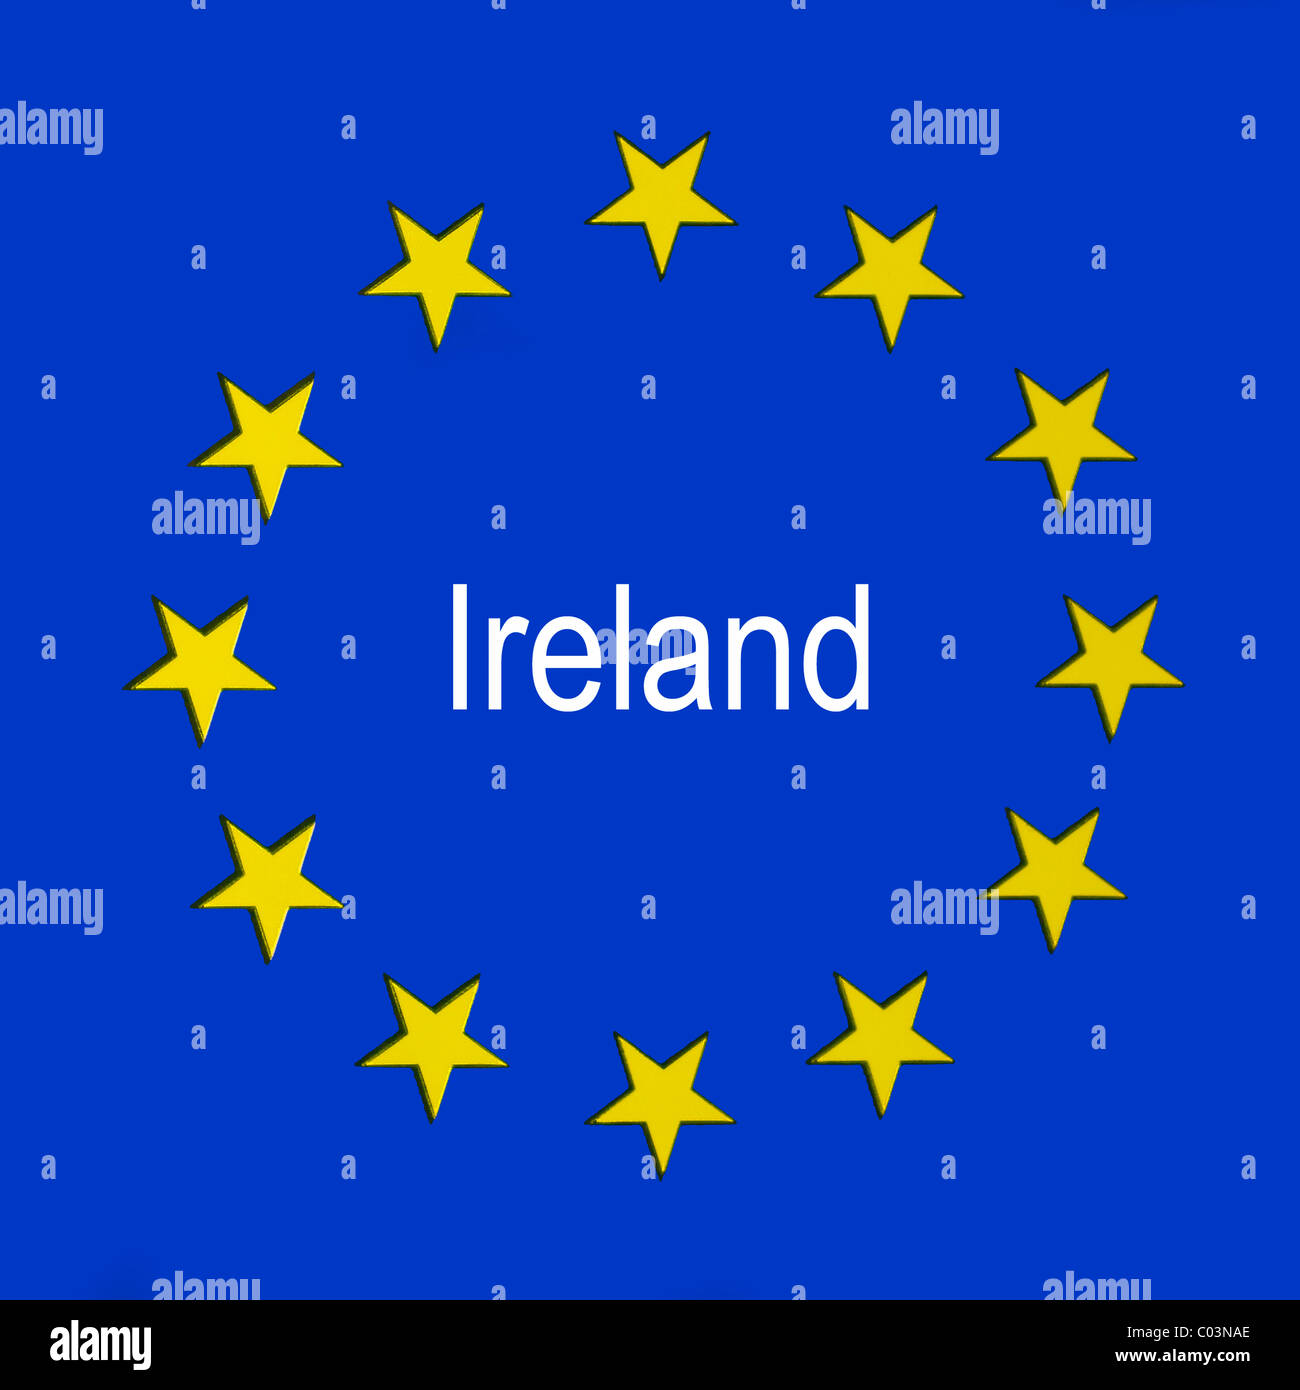 Ireland in the European union flag Stock Photo